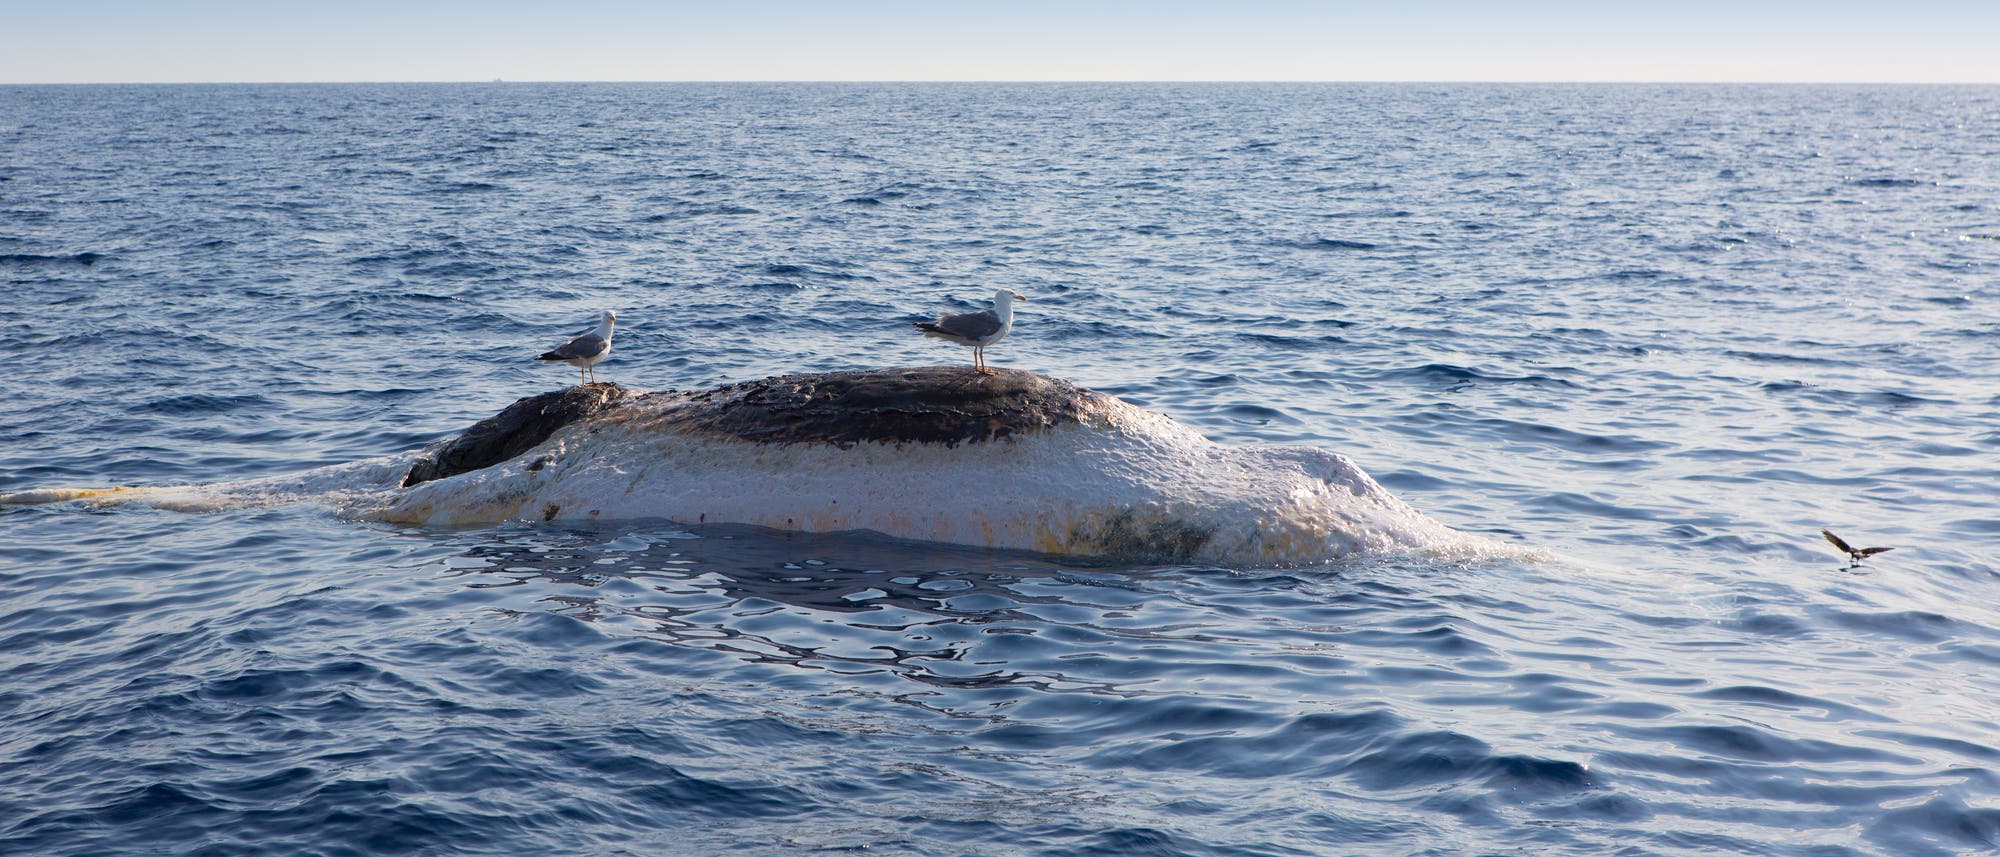 Möwen sitzen auf einem toten Wal